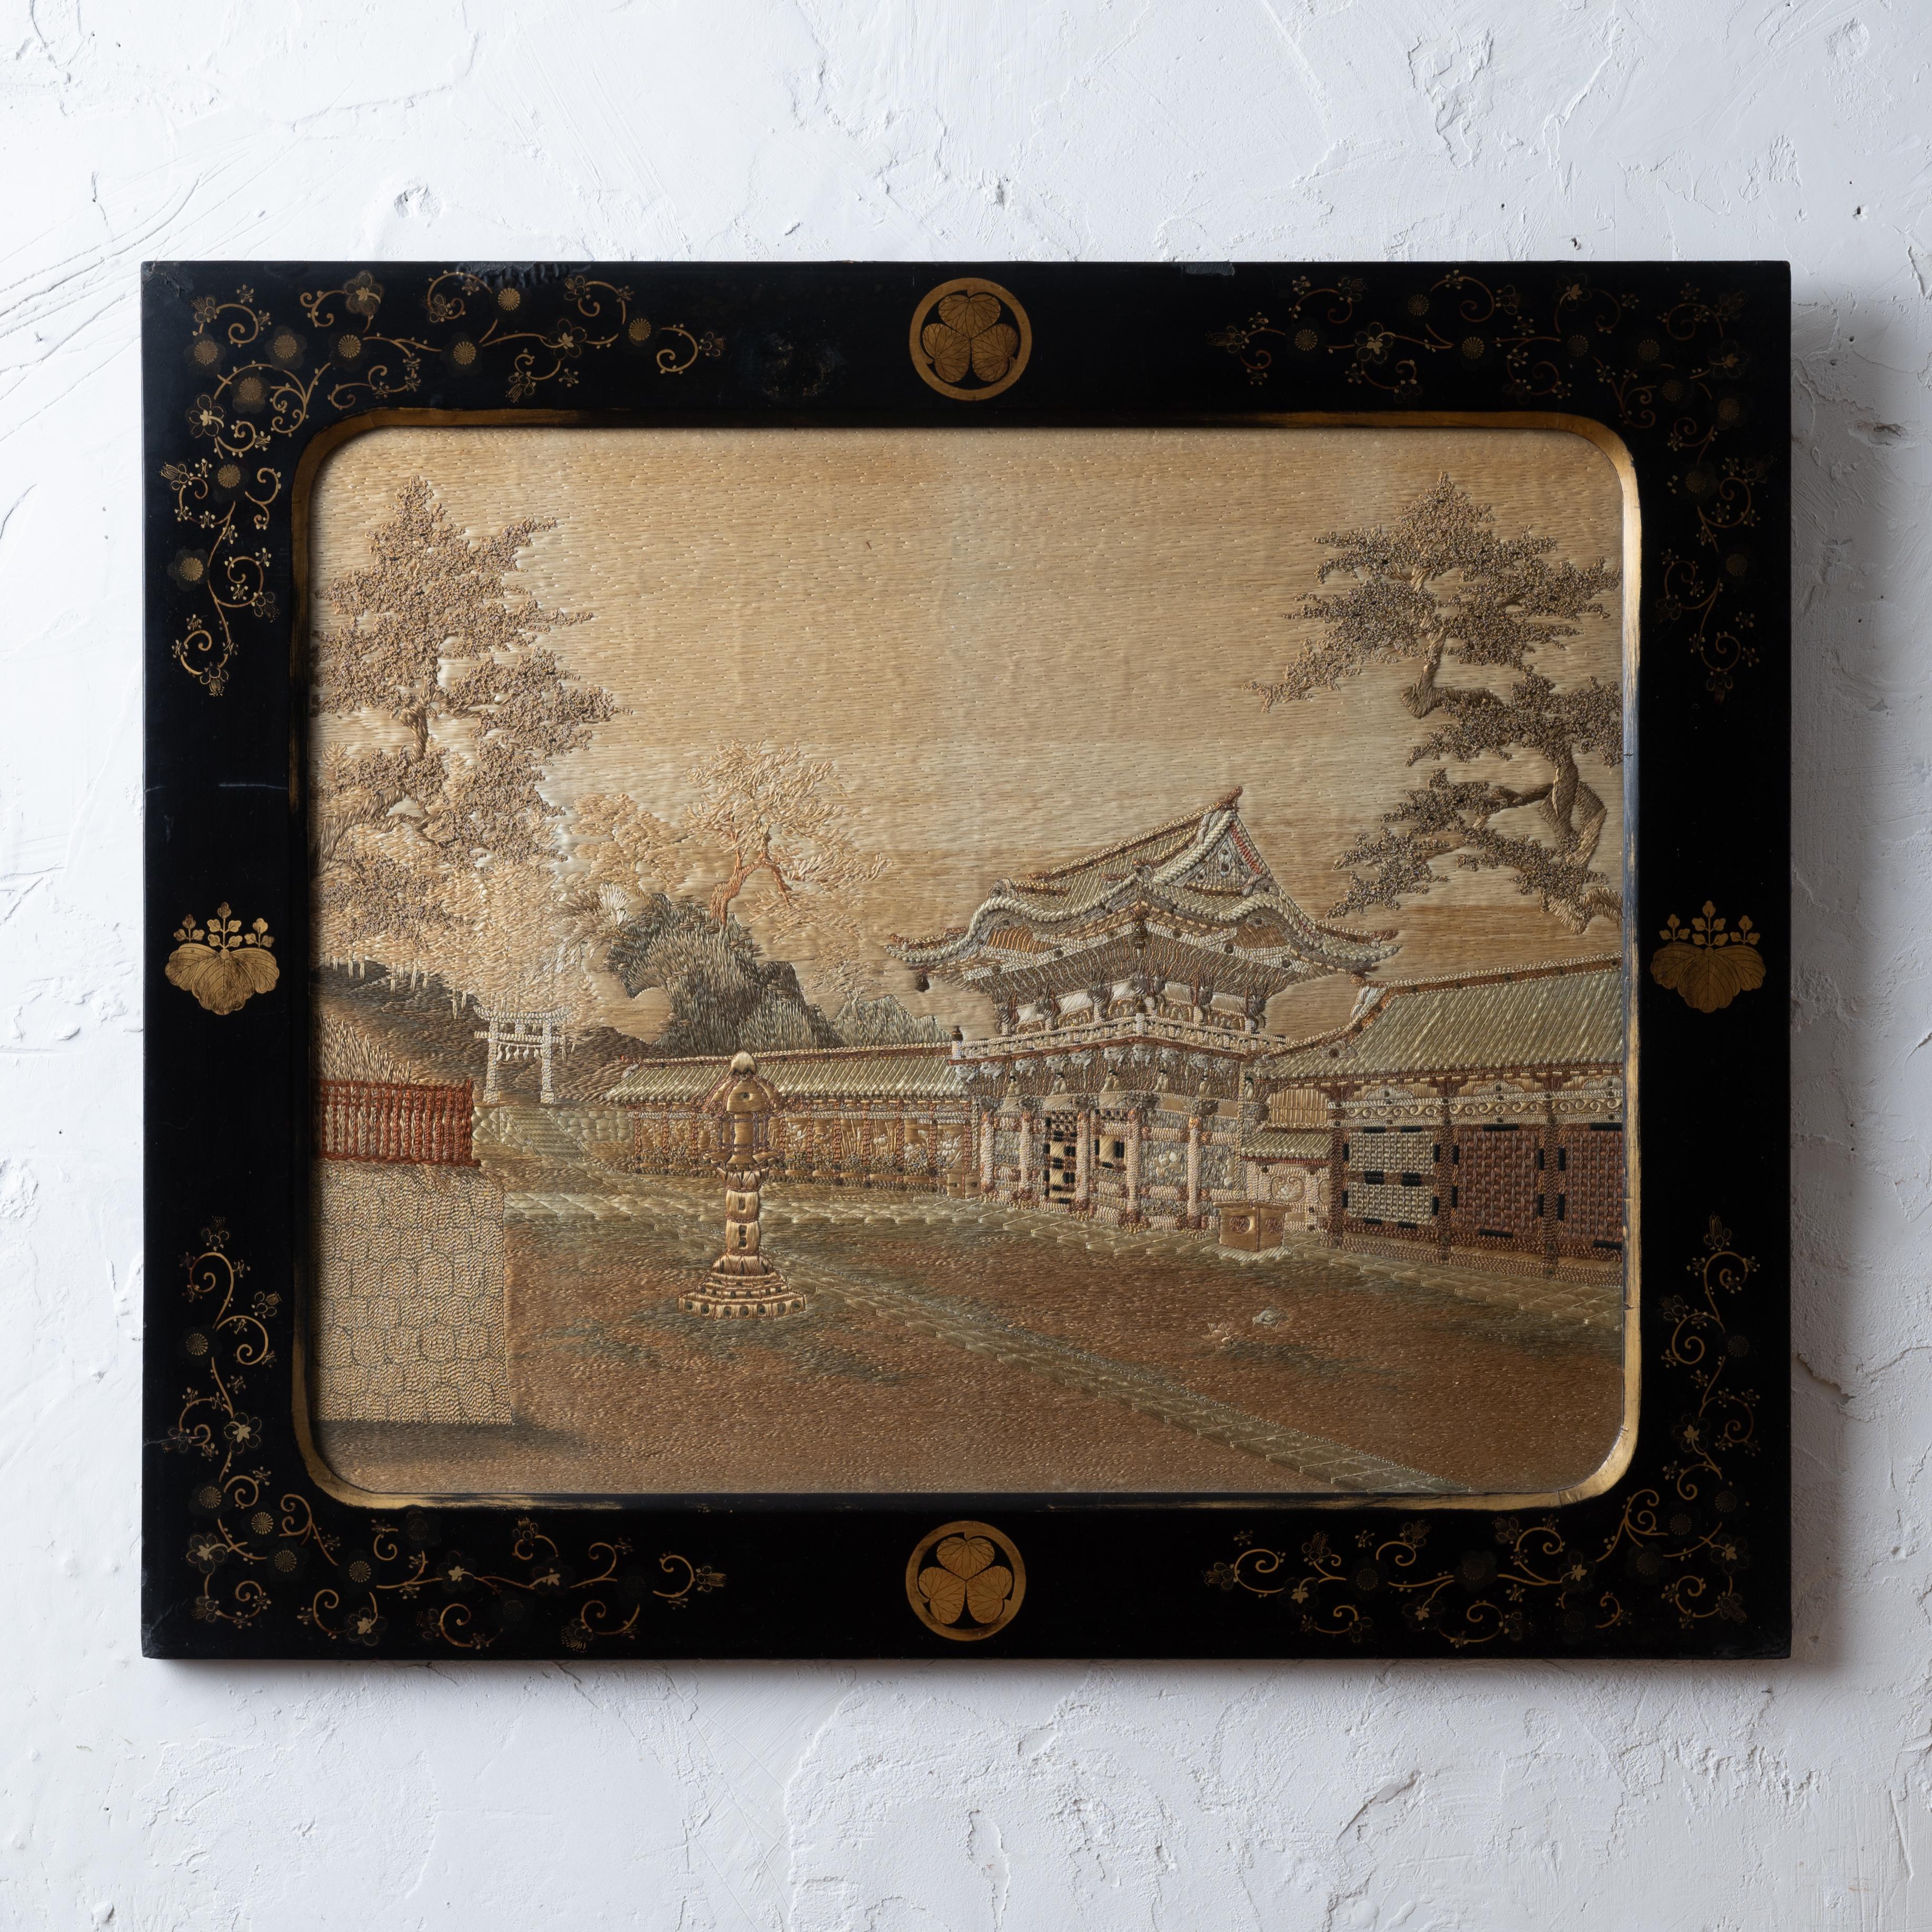 Japanische Export-Seidenstickerei eines Shinto-Schreins in originalem, paketvergoldetem, ebonisiertem Lackrahmen, um 1890.

29 ¼ mal 24 ¾ Zoll

